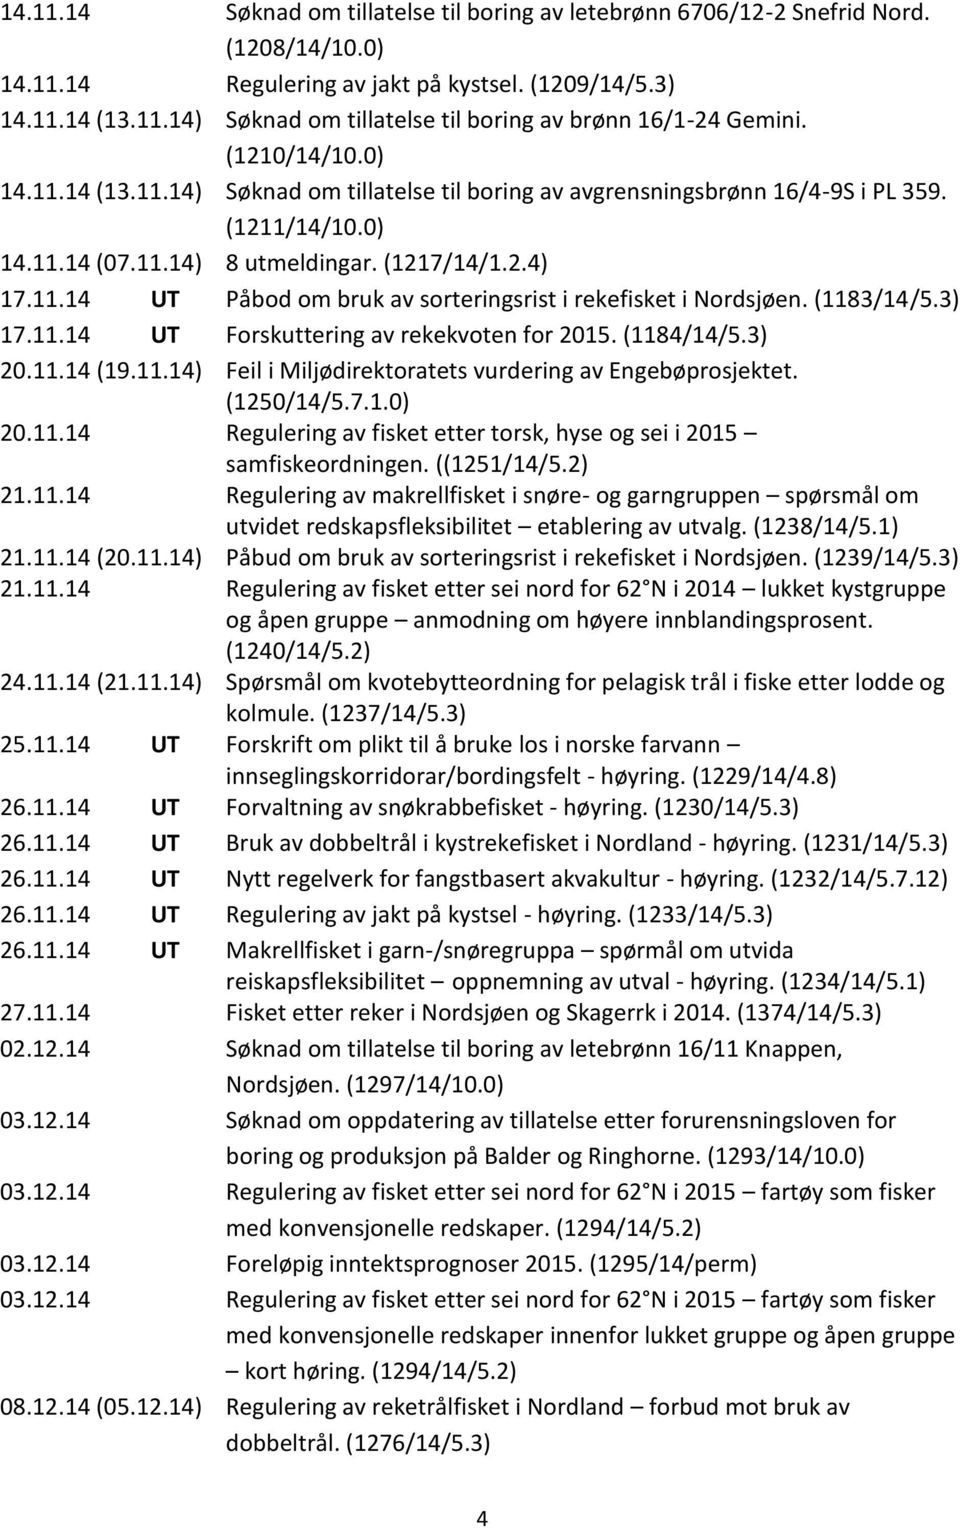 (1183/14/5.3) 17.11.14 UT Forskuttering av rekekvoten for 2015. (1184/14/5.3) 20.11.14 (19.11.14) Feil i Miljødirektoratets vurdering av Engebøprosjektet. (1250/14/5.7.1.0) 20.11.14 Regulering av fisket etter torsk, hyse og sei i 2015 samfiskeordningen.